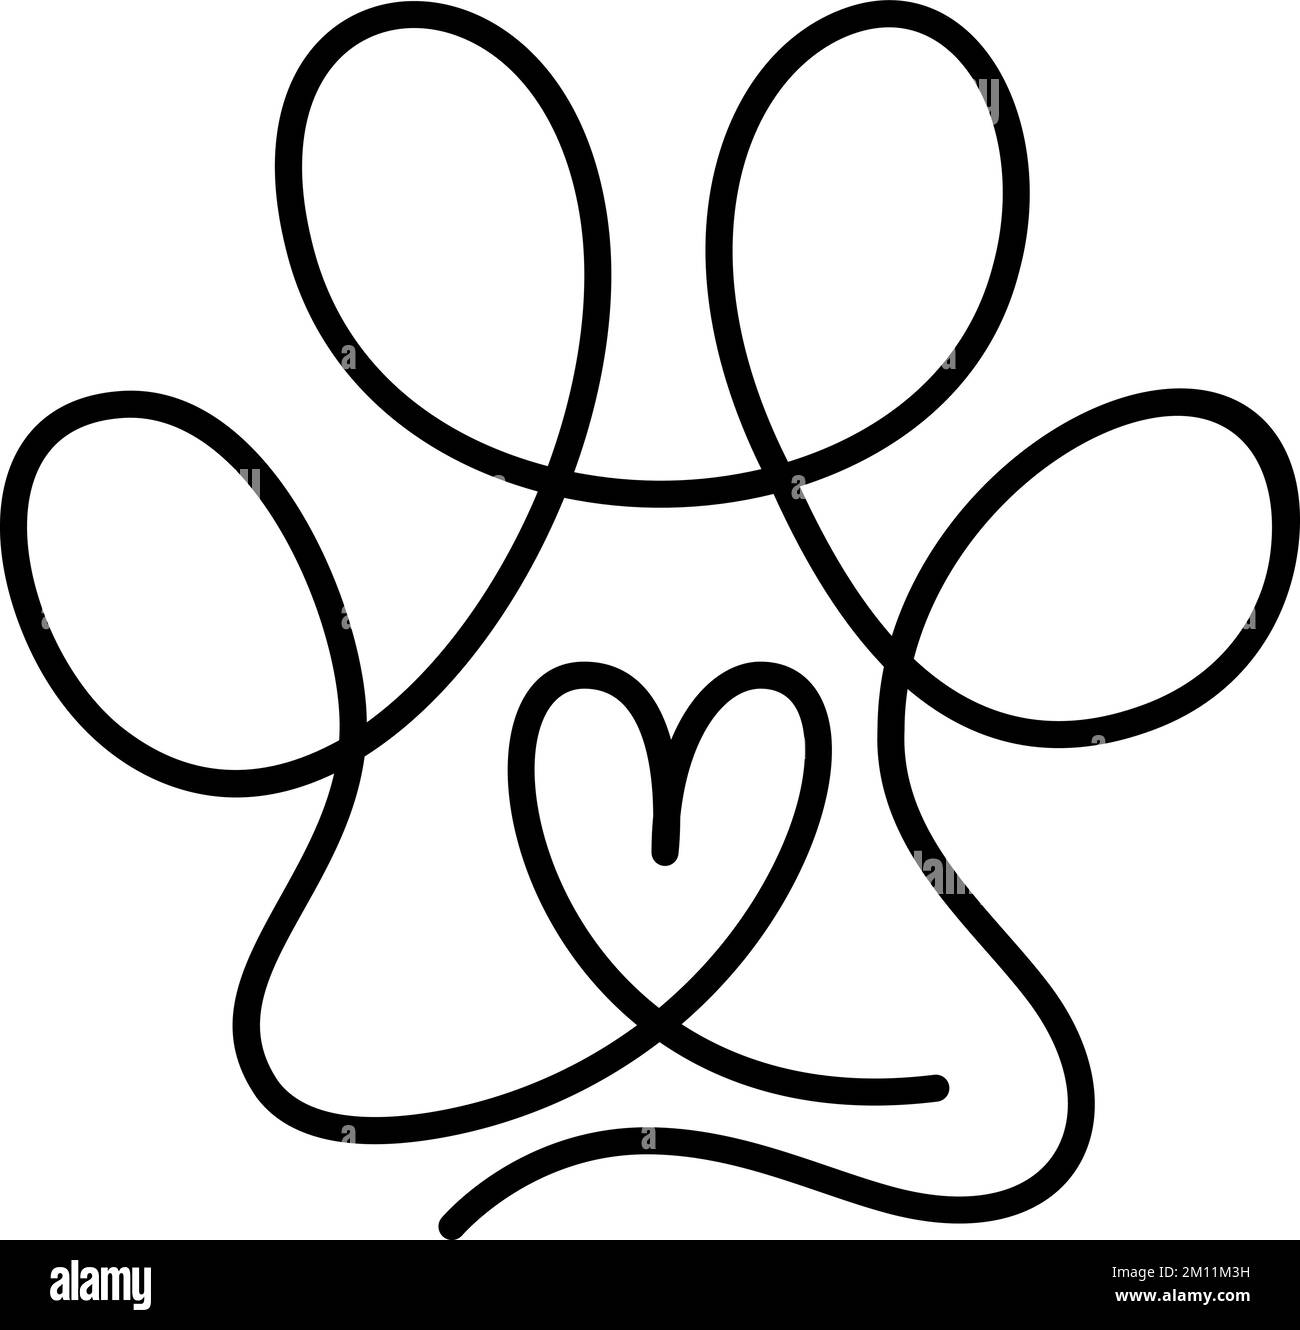 Herz mit Katzen- oder Hundepfote Katzenabdruck in durchgehender einzeiliger Zeichnung des Logos. Minimale Strichgrafiken. Tier im Herzen. Haustier-Liebes-Konzept Monoline Stock Vektor